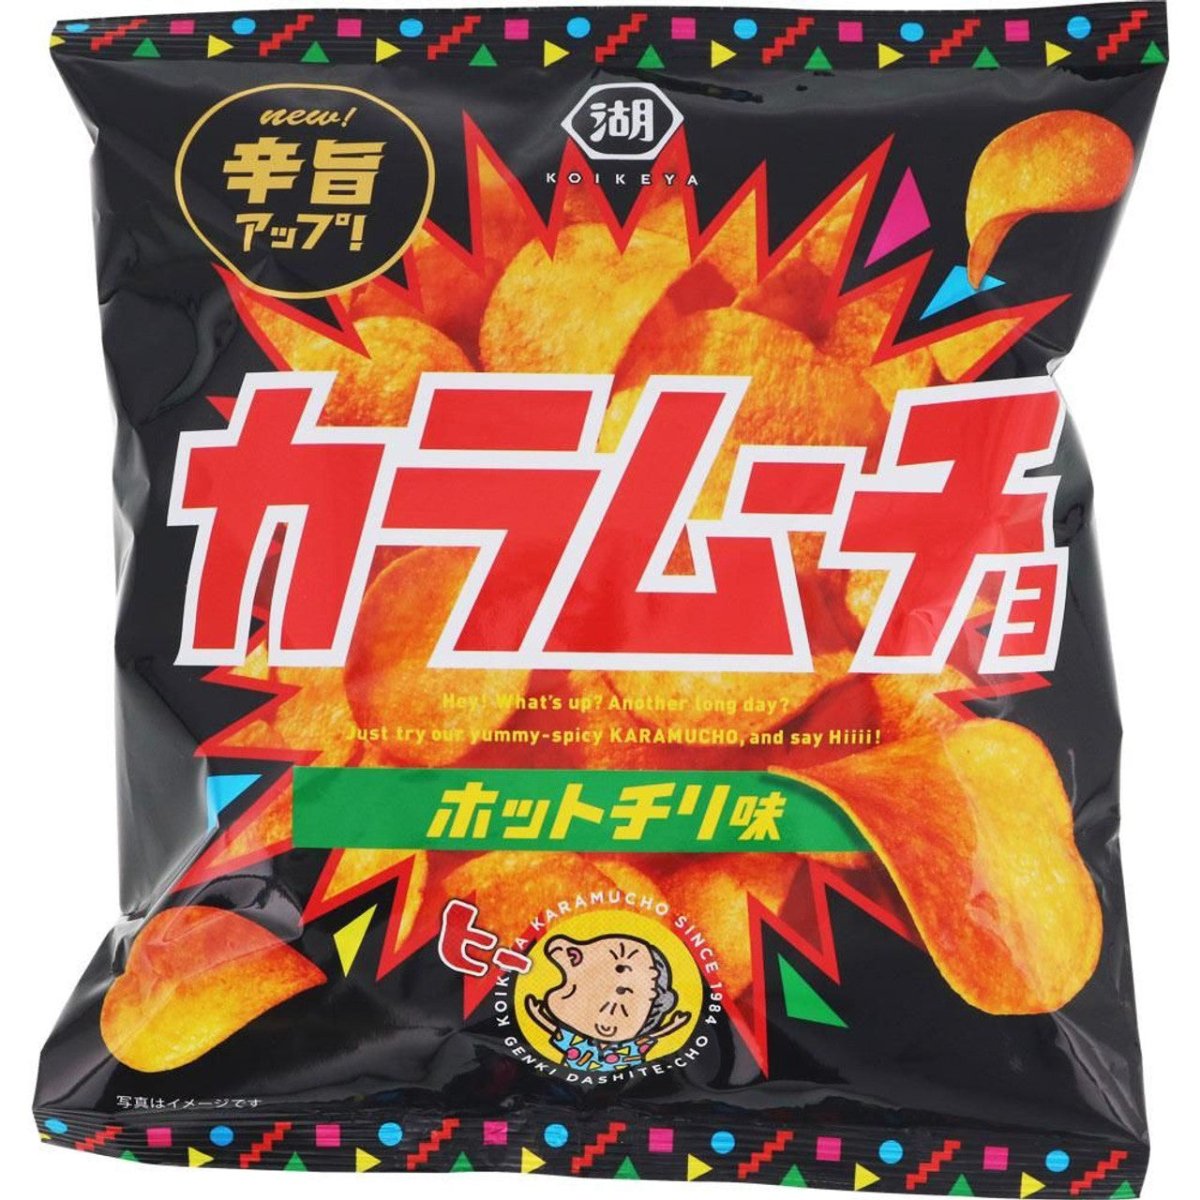 KOIKEYA Karamucho Chips Hot Chili 55g - Candy Mail UK